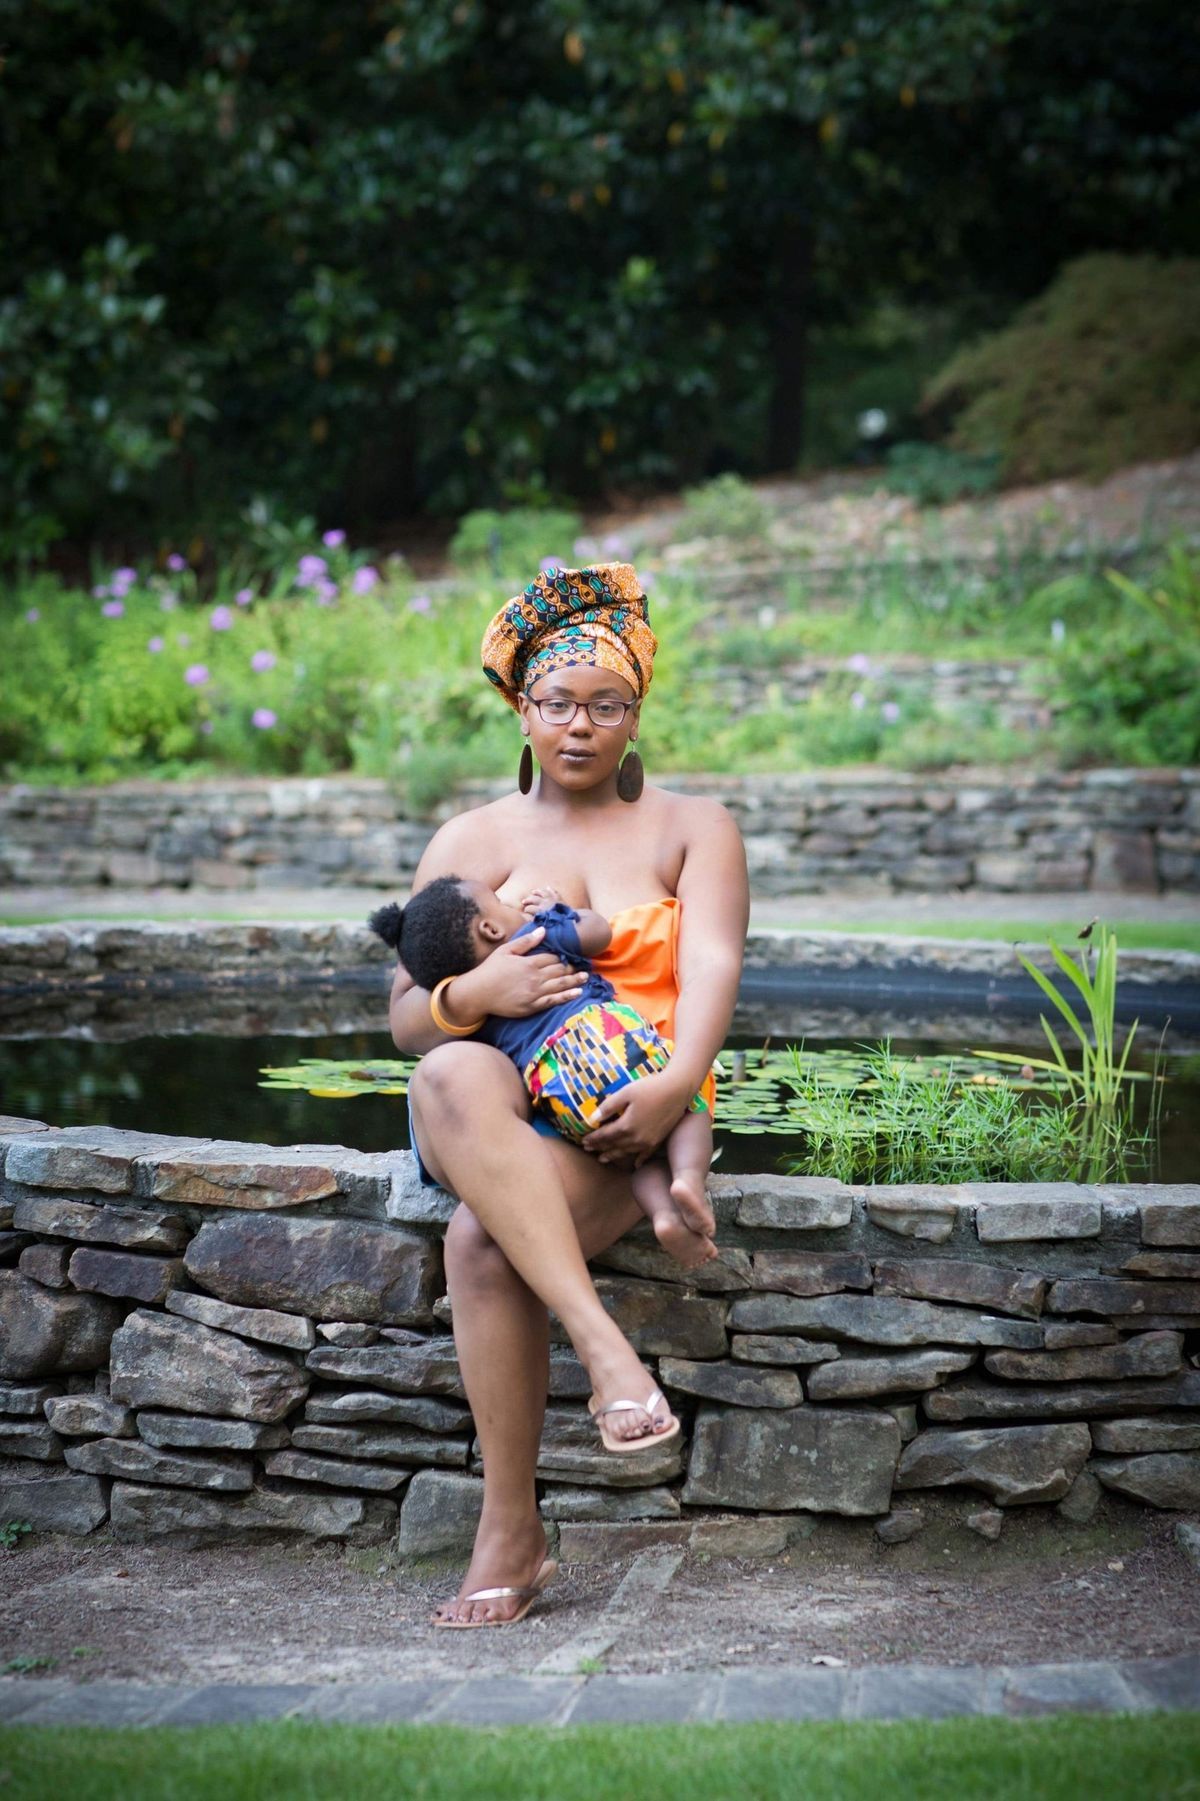 Այս մայրիկները հիանալի լուսանկարահանում են կատարել `նշելու սևամորթ կանանց և կրծքով կերակրումը